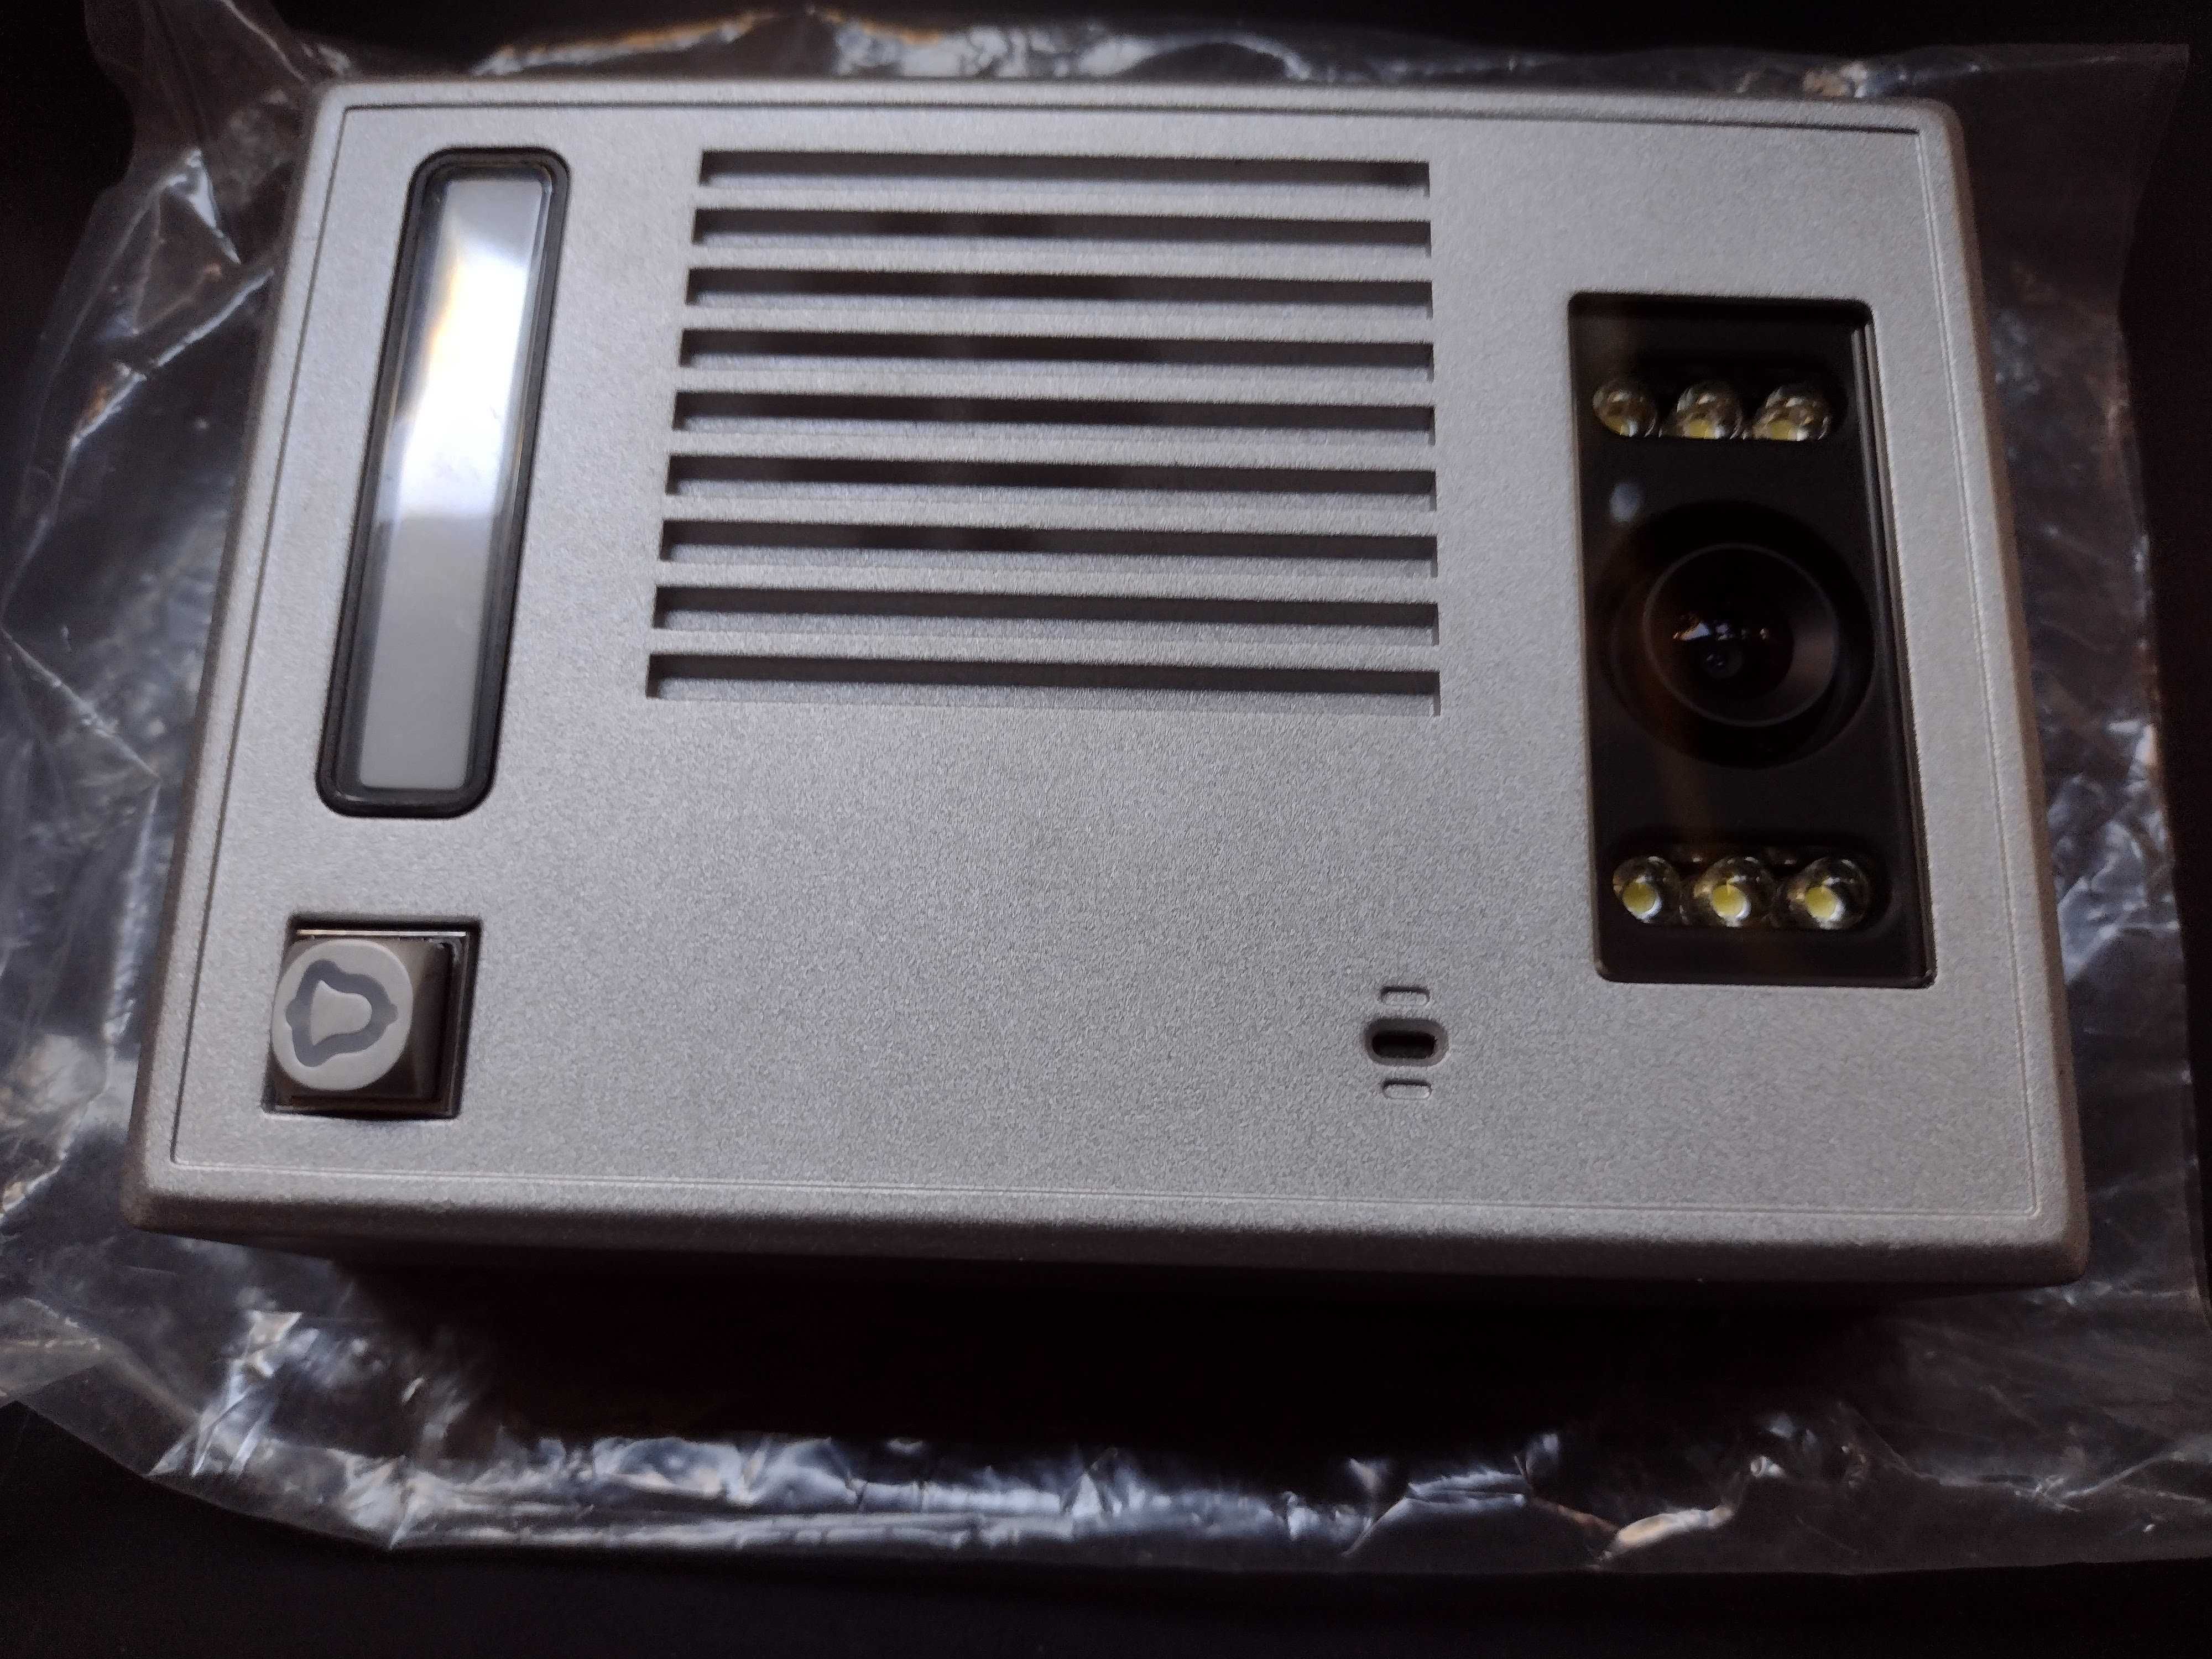 Unitate externa videointerfon TZ-SAC5C-XL-01, LED Light, noua